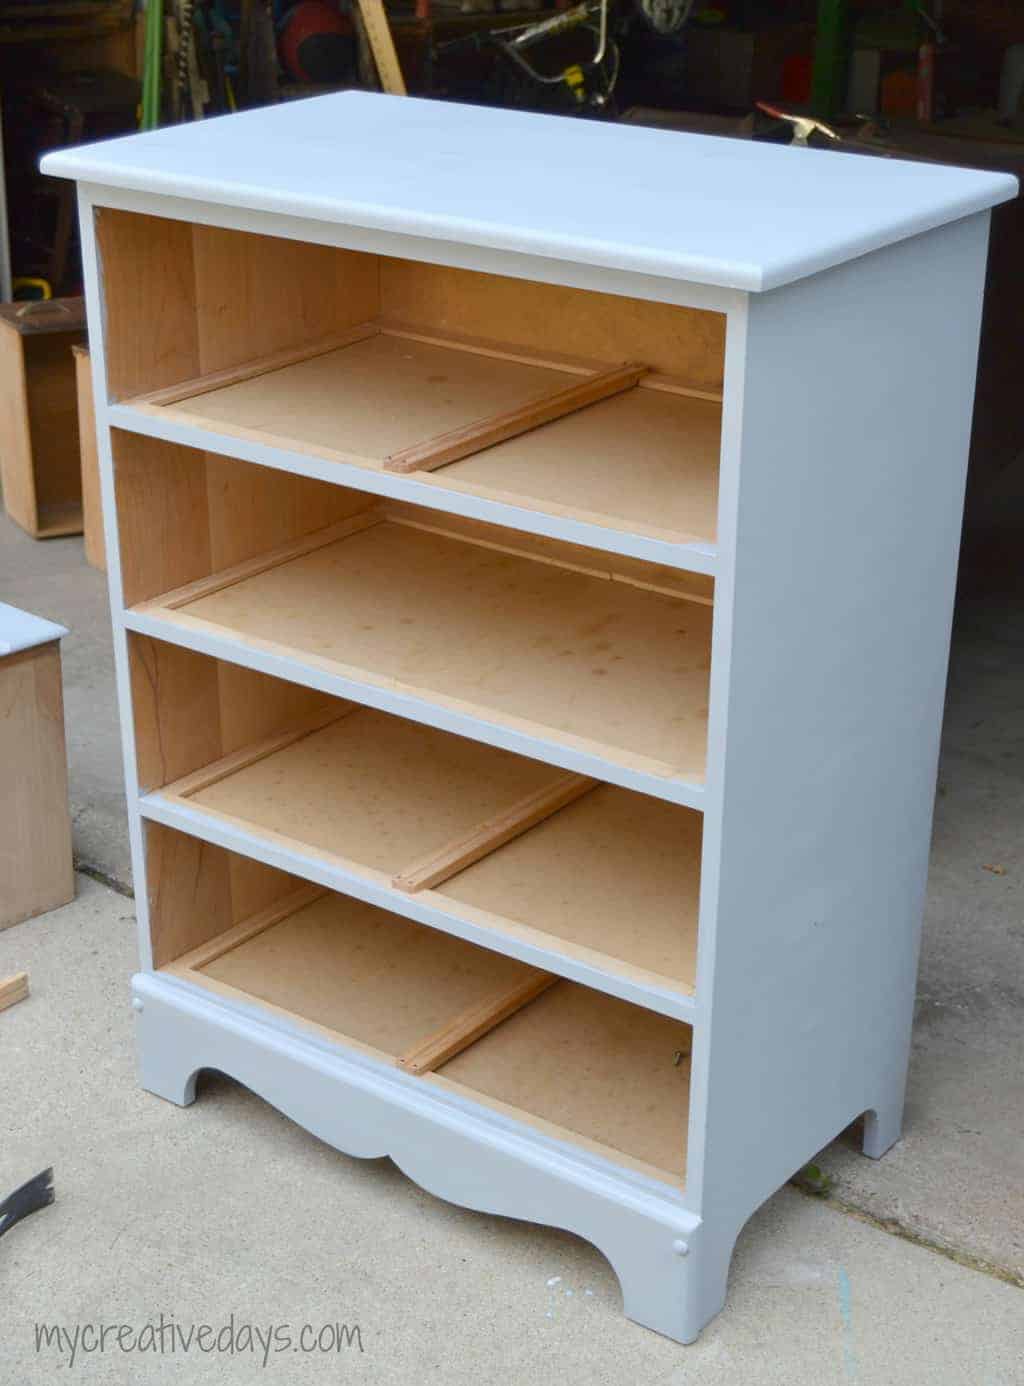 Repurposed Dresser Turned Bookshelf, How To Add Shelves An Old Dresser